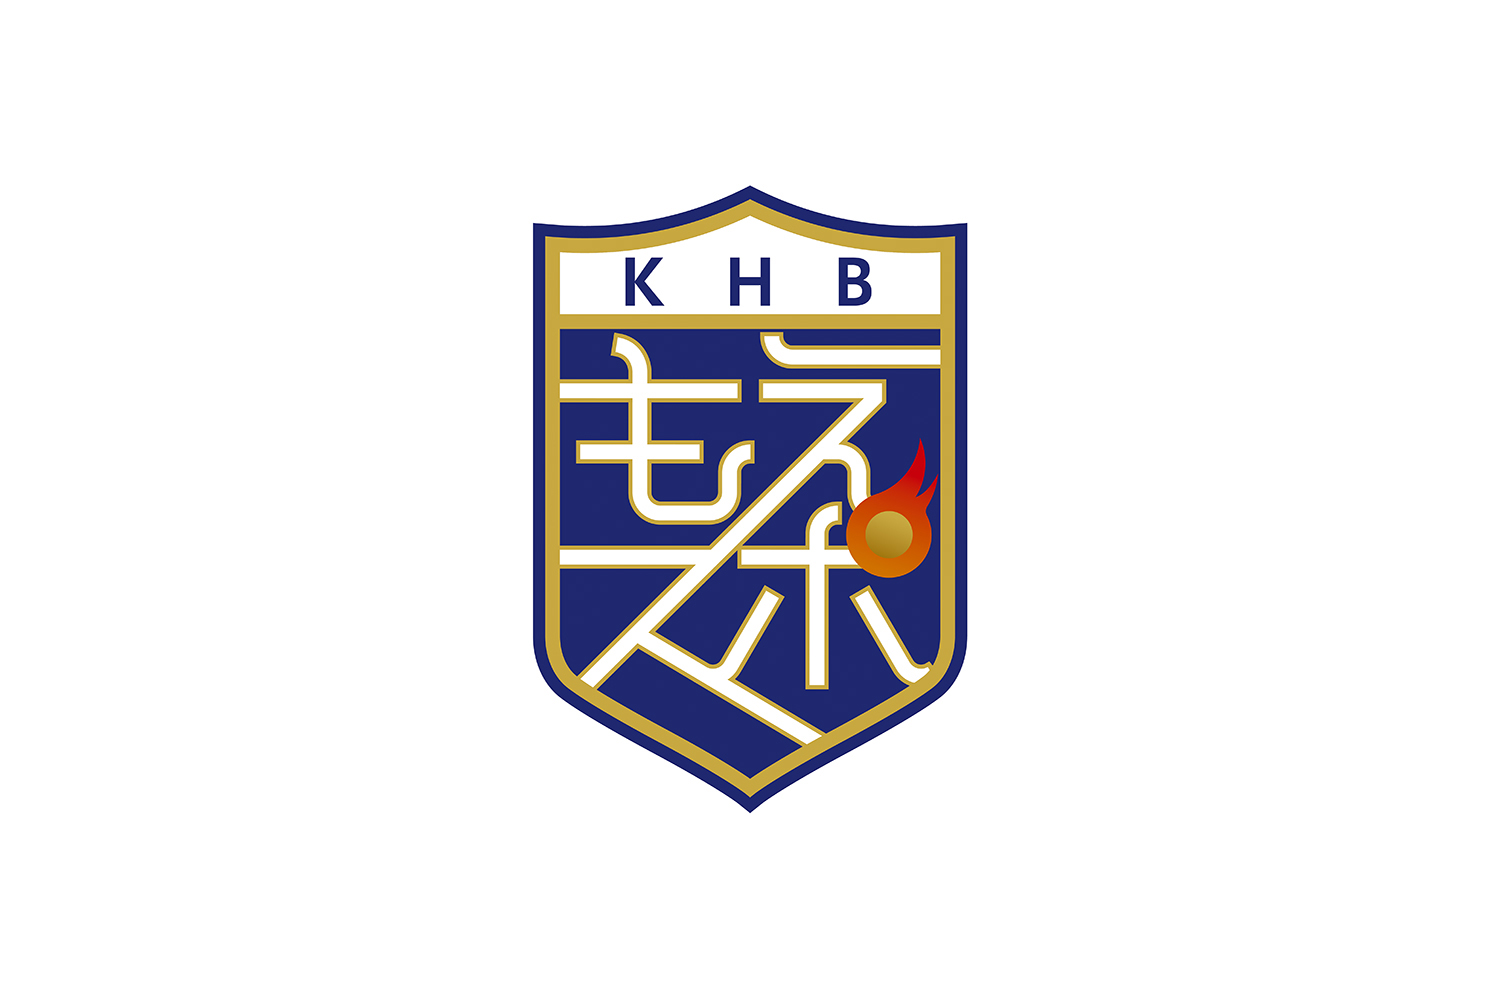 KHB 東日本放送「もえスポ」／ ロゴマークデザイン